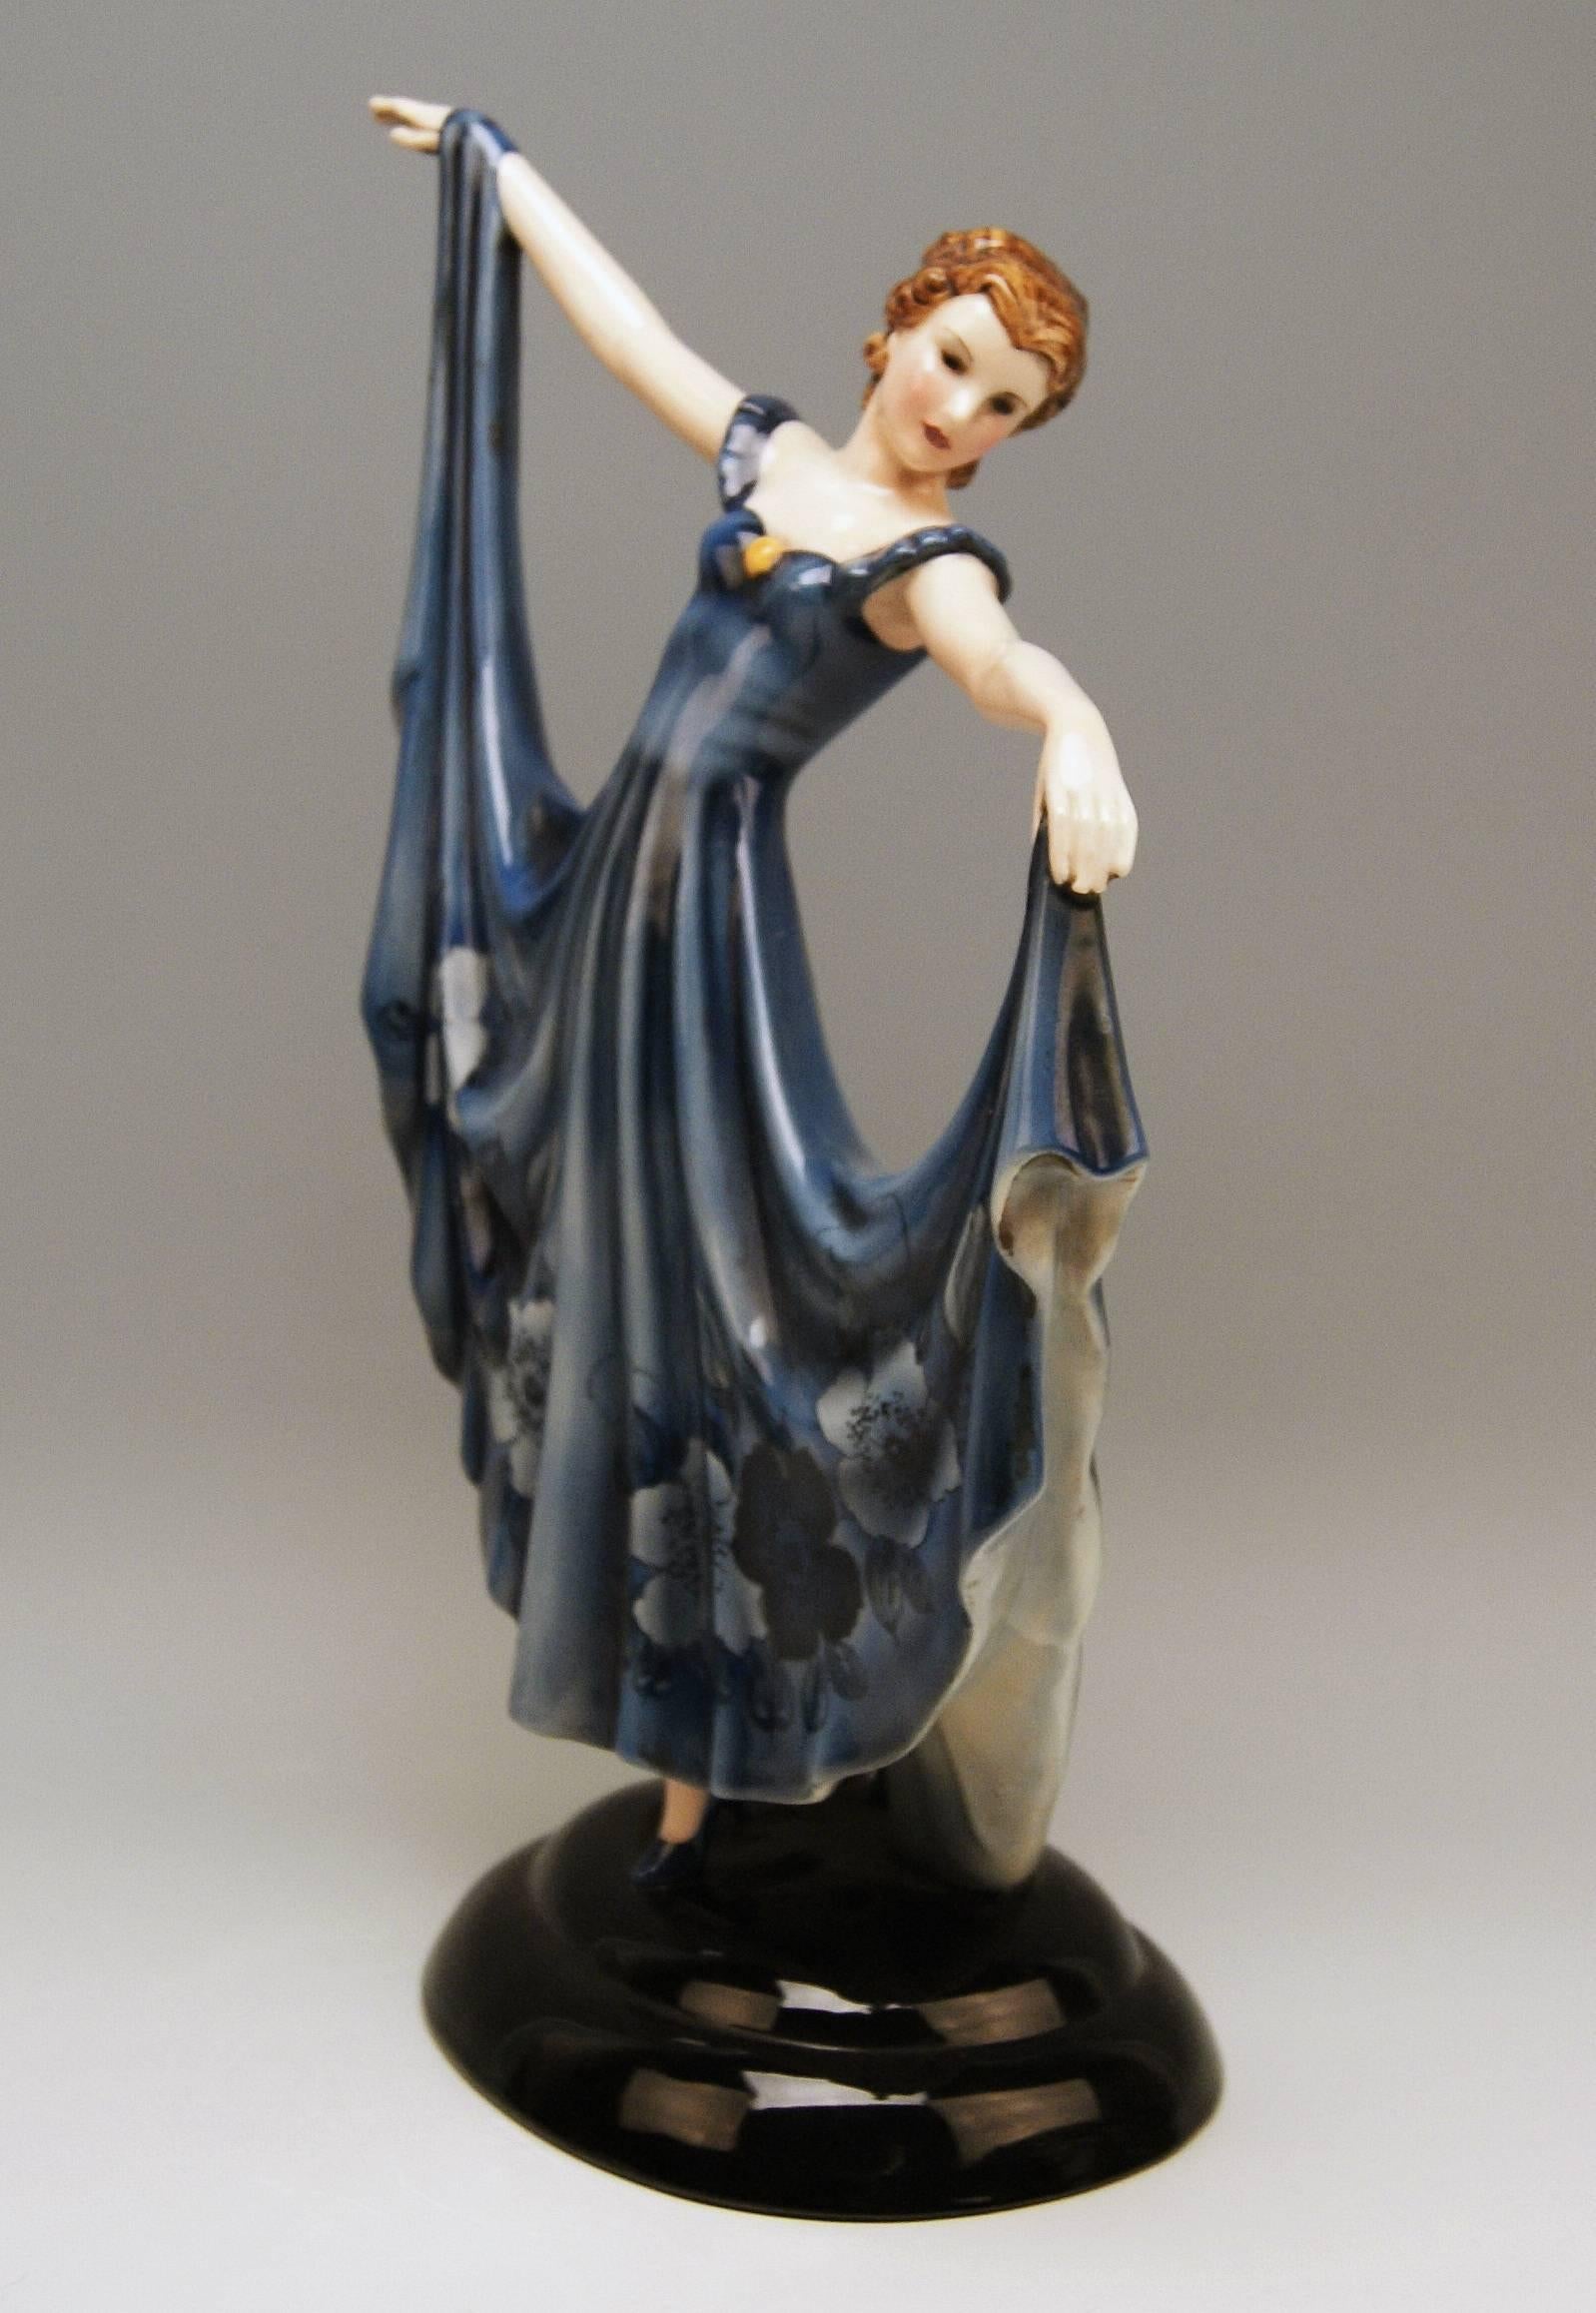 Glazed Keramos Lady Dancer Art Deco Blue Dress Model 2030 by Stefan Dakon